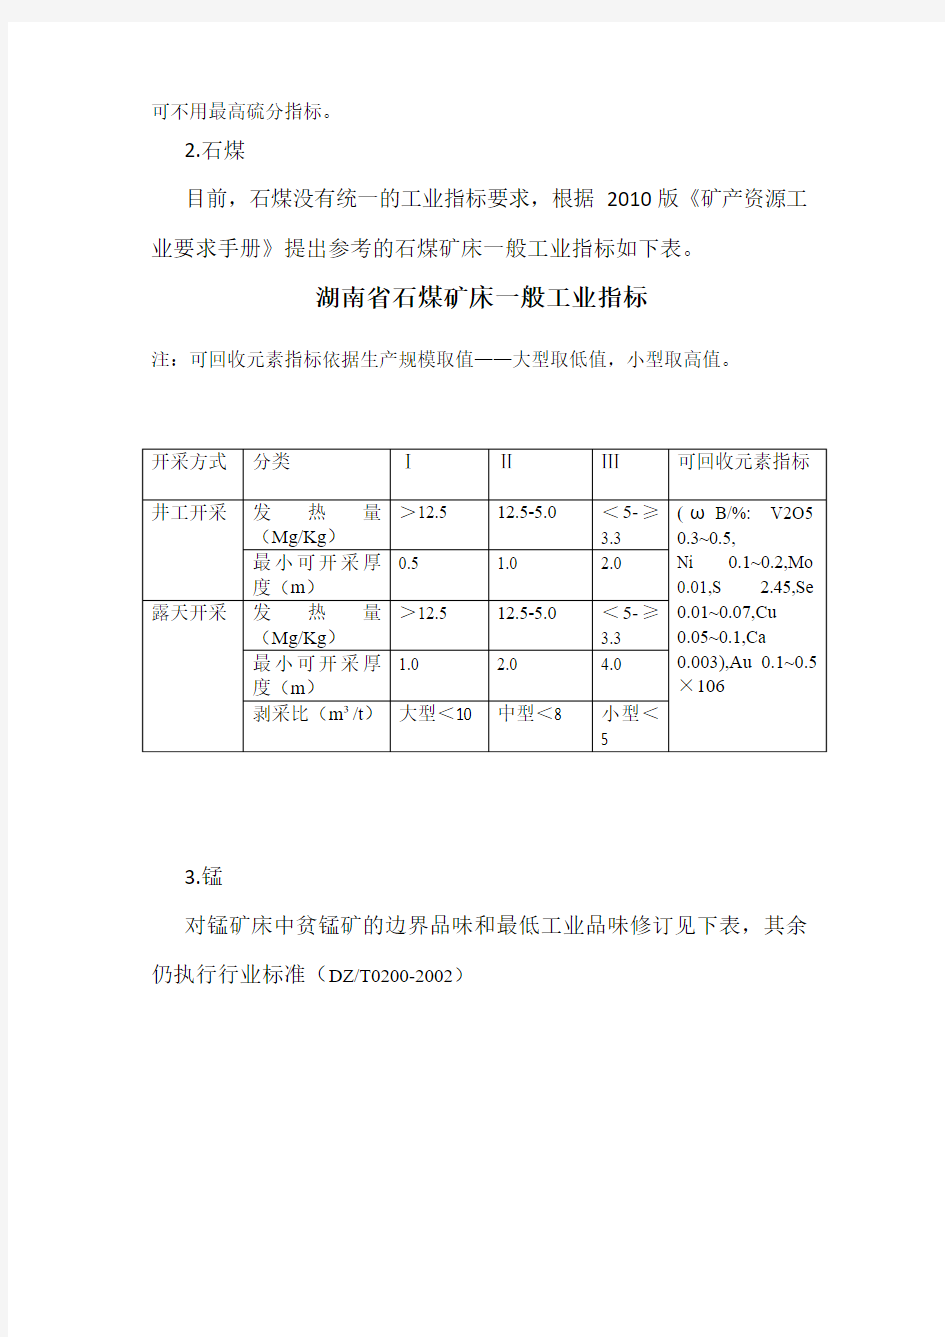 湖南省部分矿种矿床一般工业指标